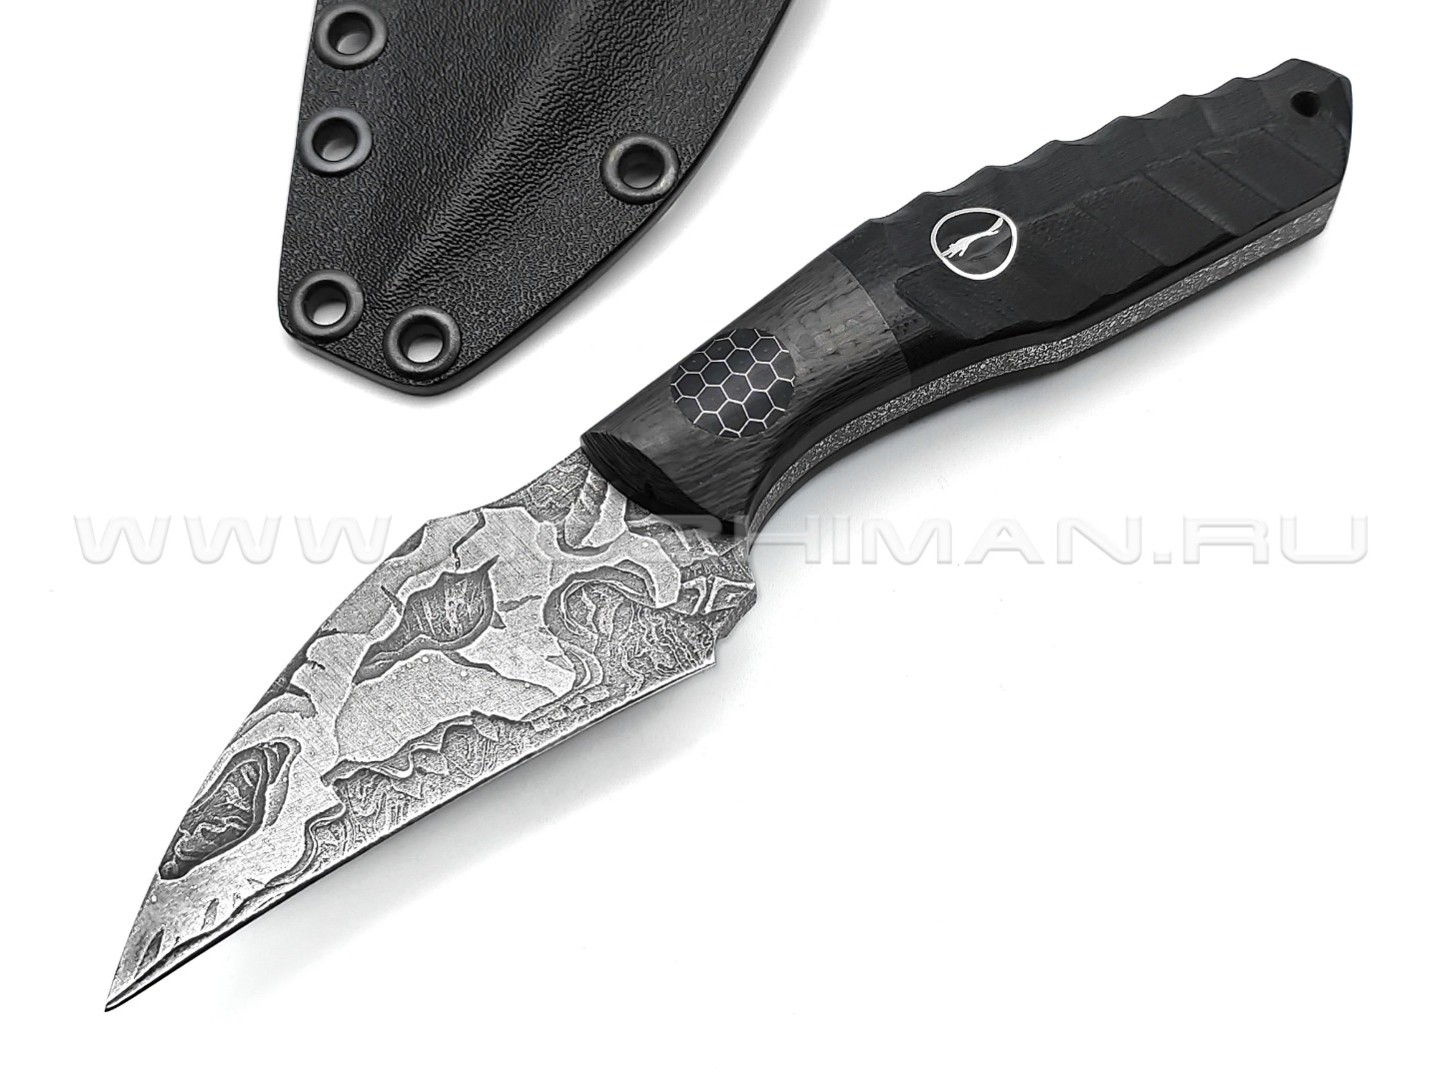 Волчий Век нож Wharn Mod. Karambit, сталь PGK WA, рукоять G10, Carbon fiber